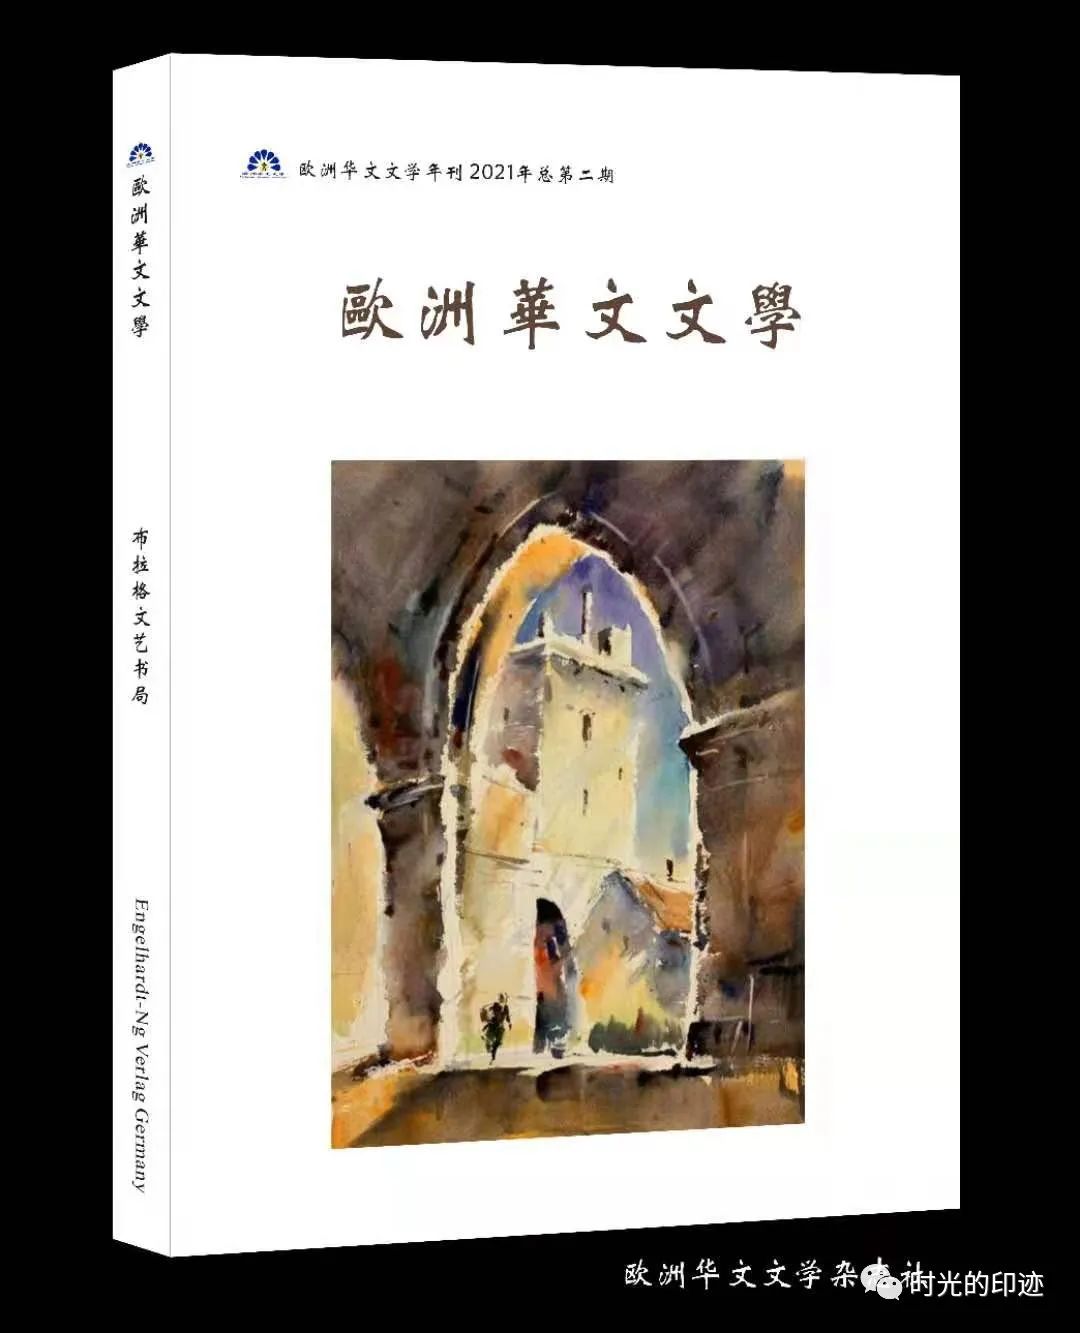 歐洲華文文學第二期| 德國黃鳳《祝理念現象與藝術本質》 - 全網搜